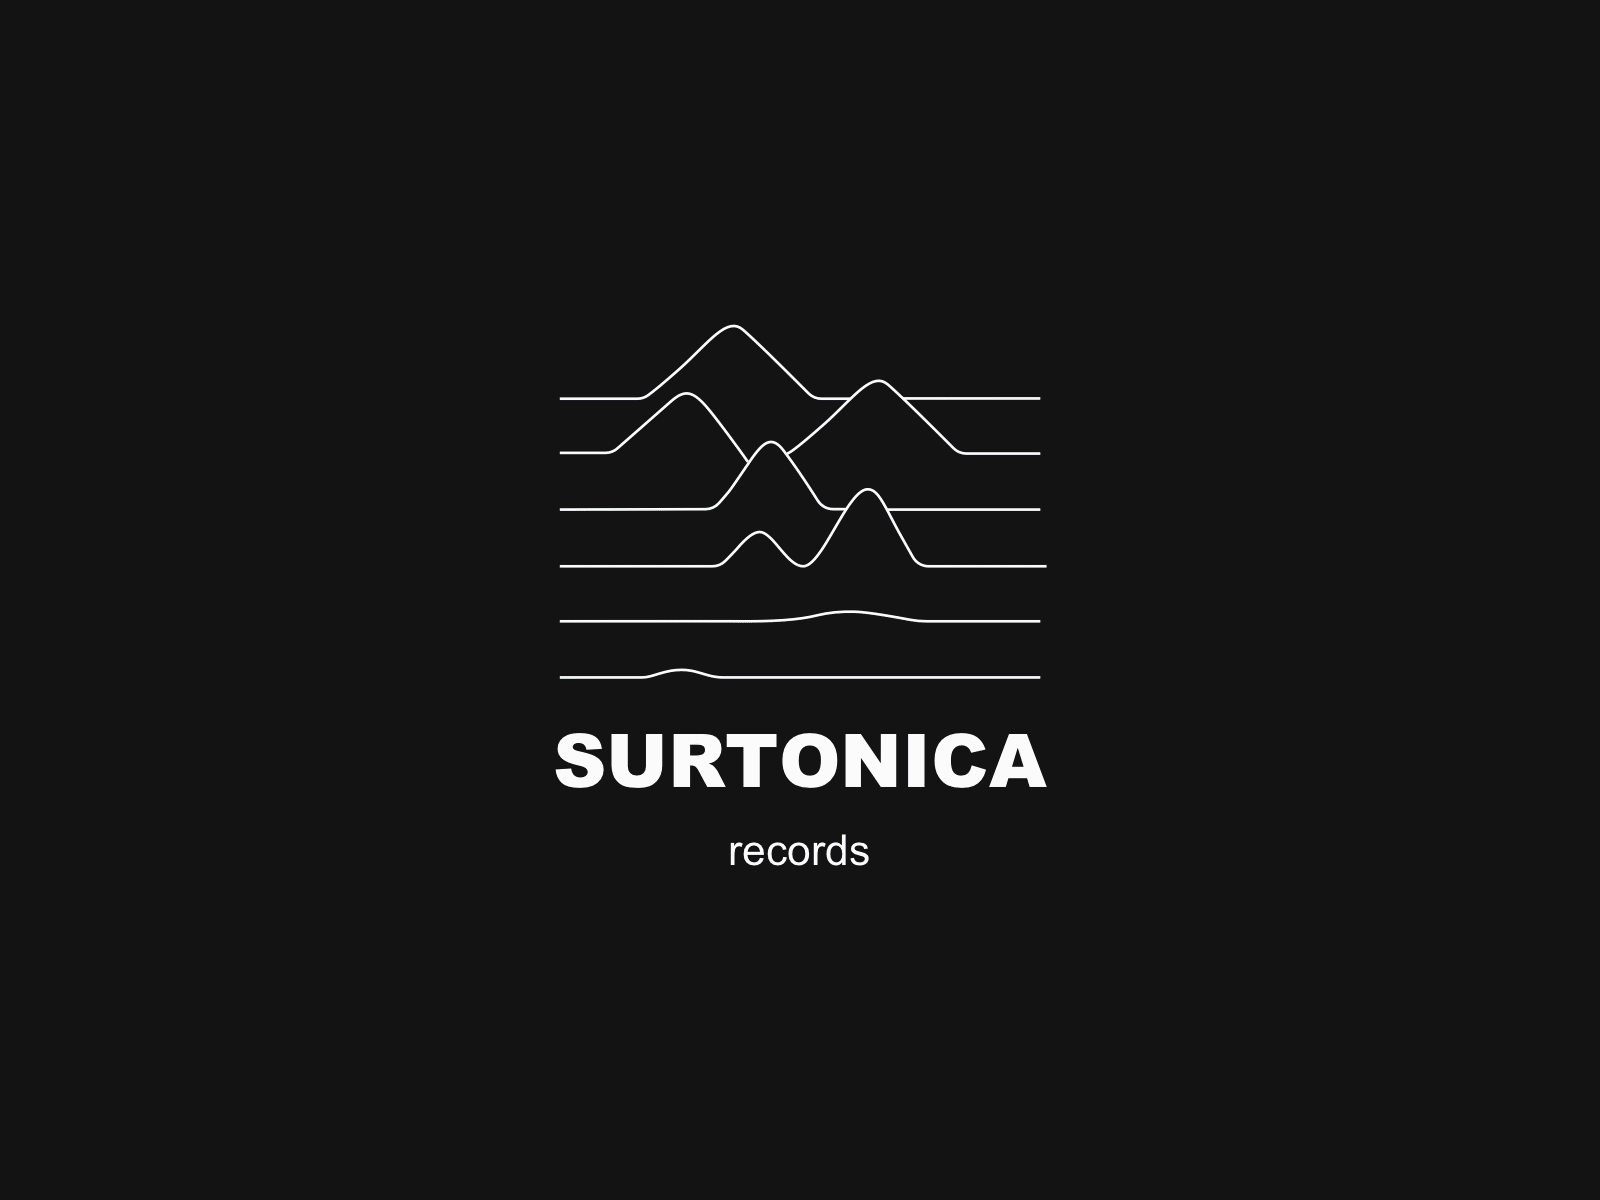 Surtonica Records branding creative logo logo design logotype music records sketch vector